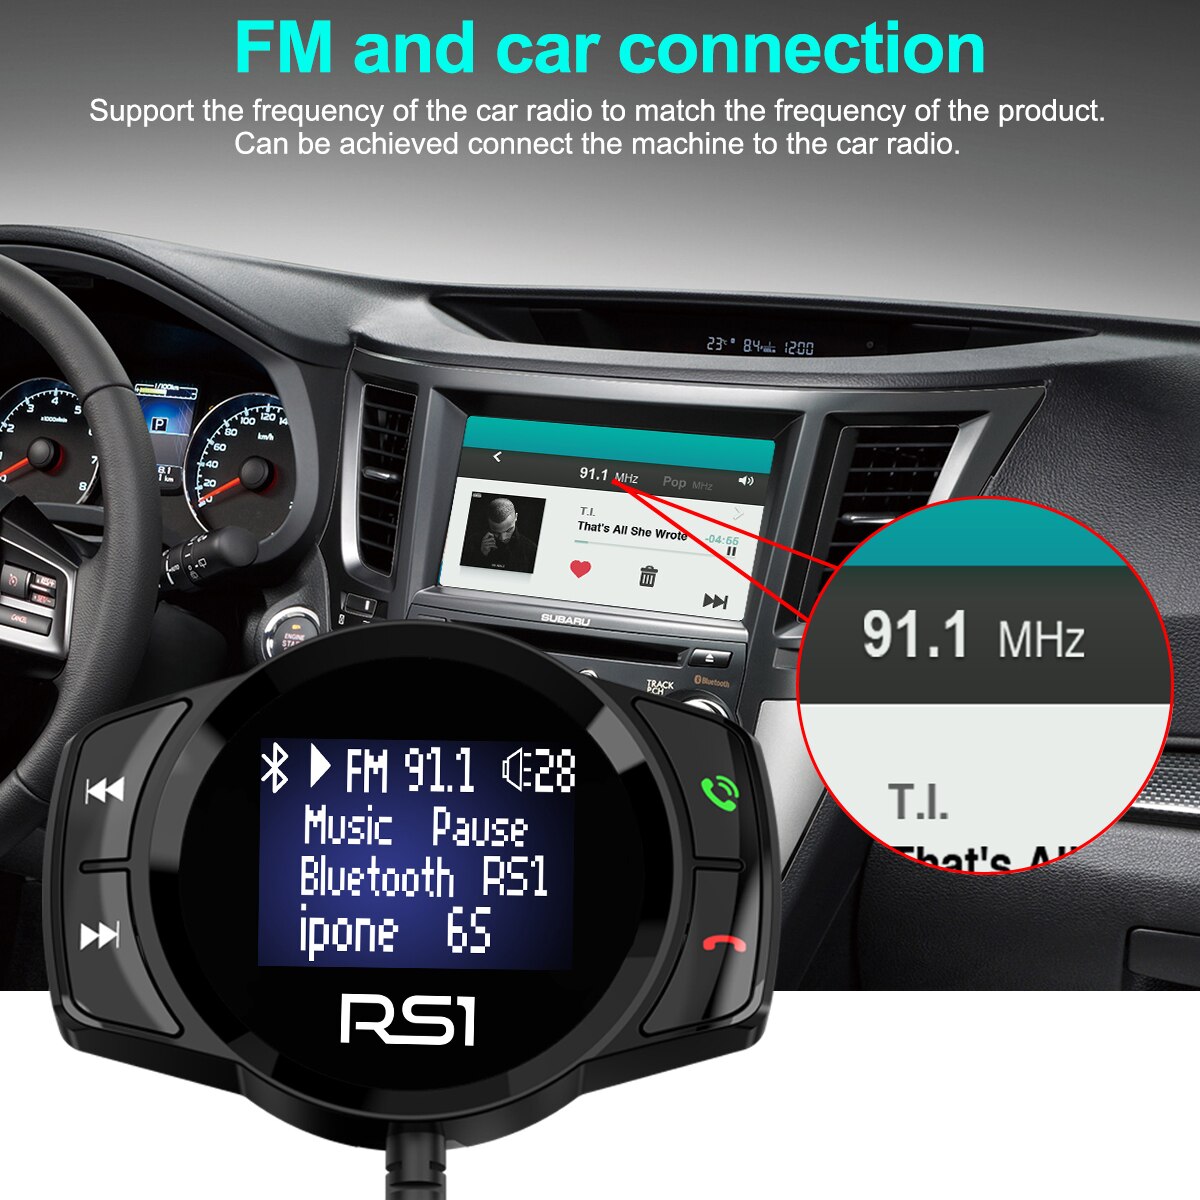 Led Screen Display Een-Klik Adapter Ontvanger Auto Luidspreker Fm-zender Handsfree Bluetooth Car Kit Voor Telefoon Handen gratis